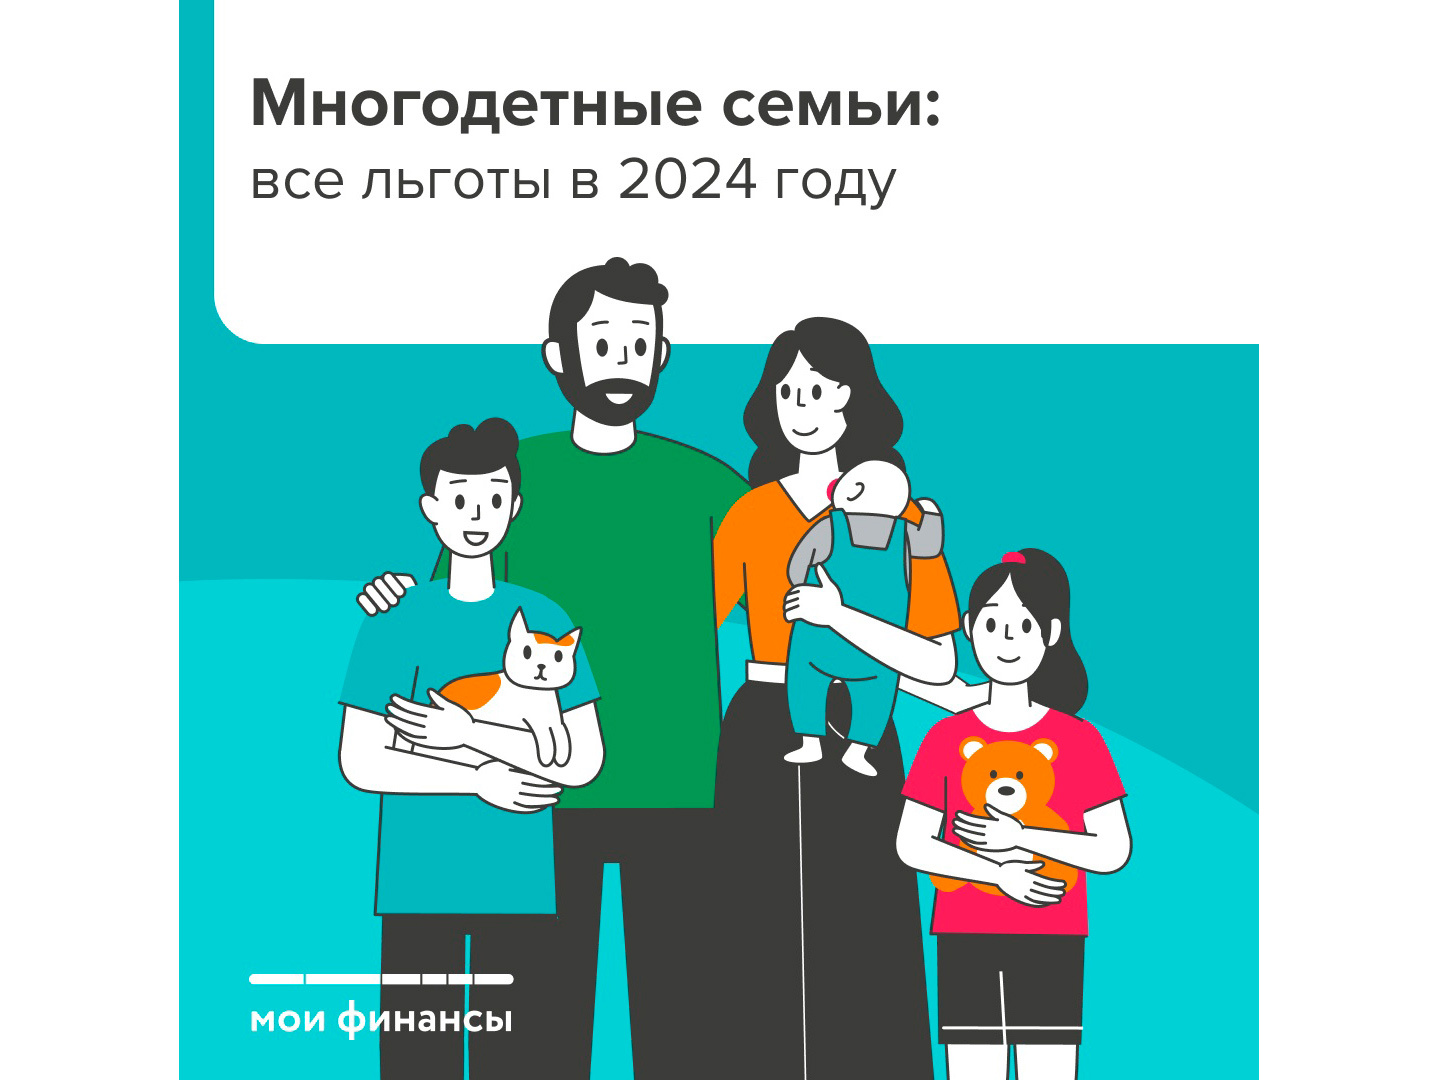 Многодетные семьи: все льготы в 2024 году.